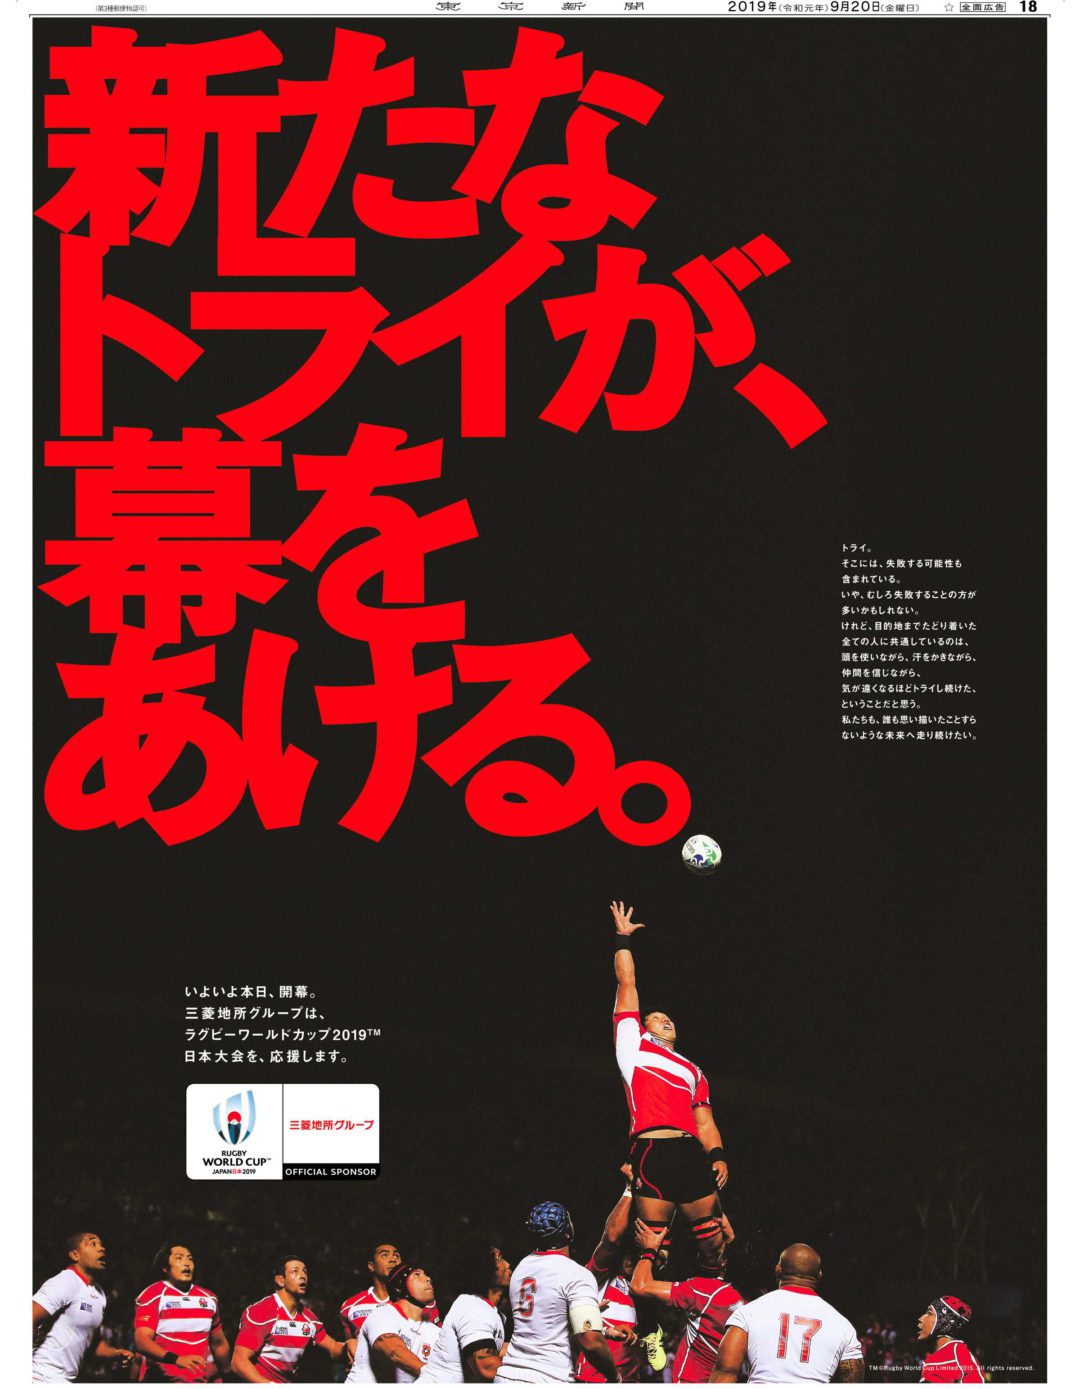 企業広告 ラグビーワールドカップ2019™日本大会 開幕篇・ 閉幕篇